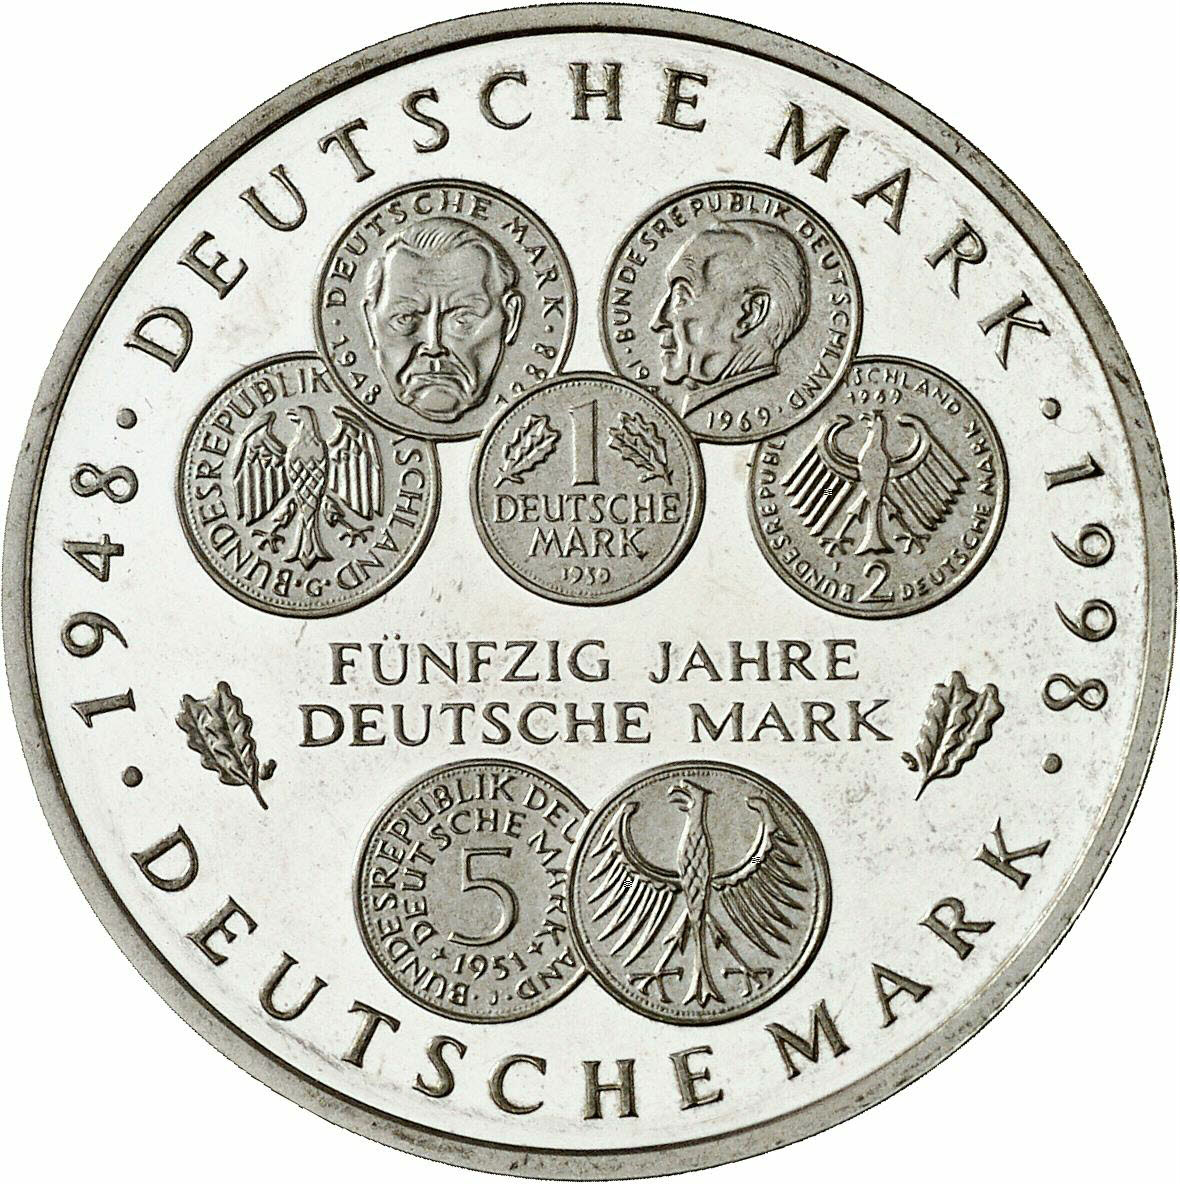 DE 10 Deutsche Mark 1998 F